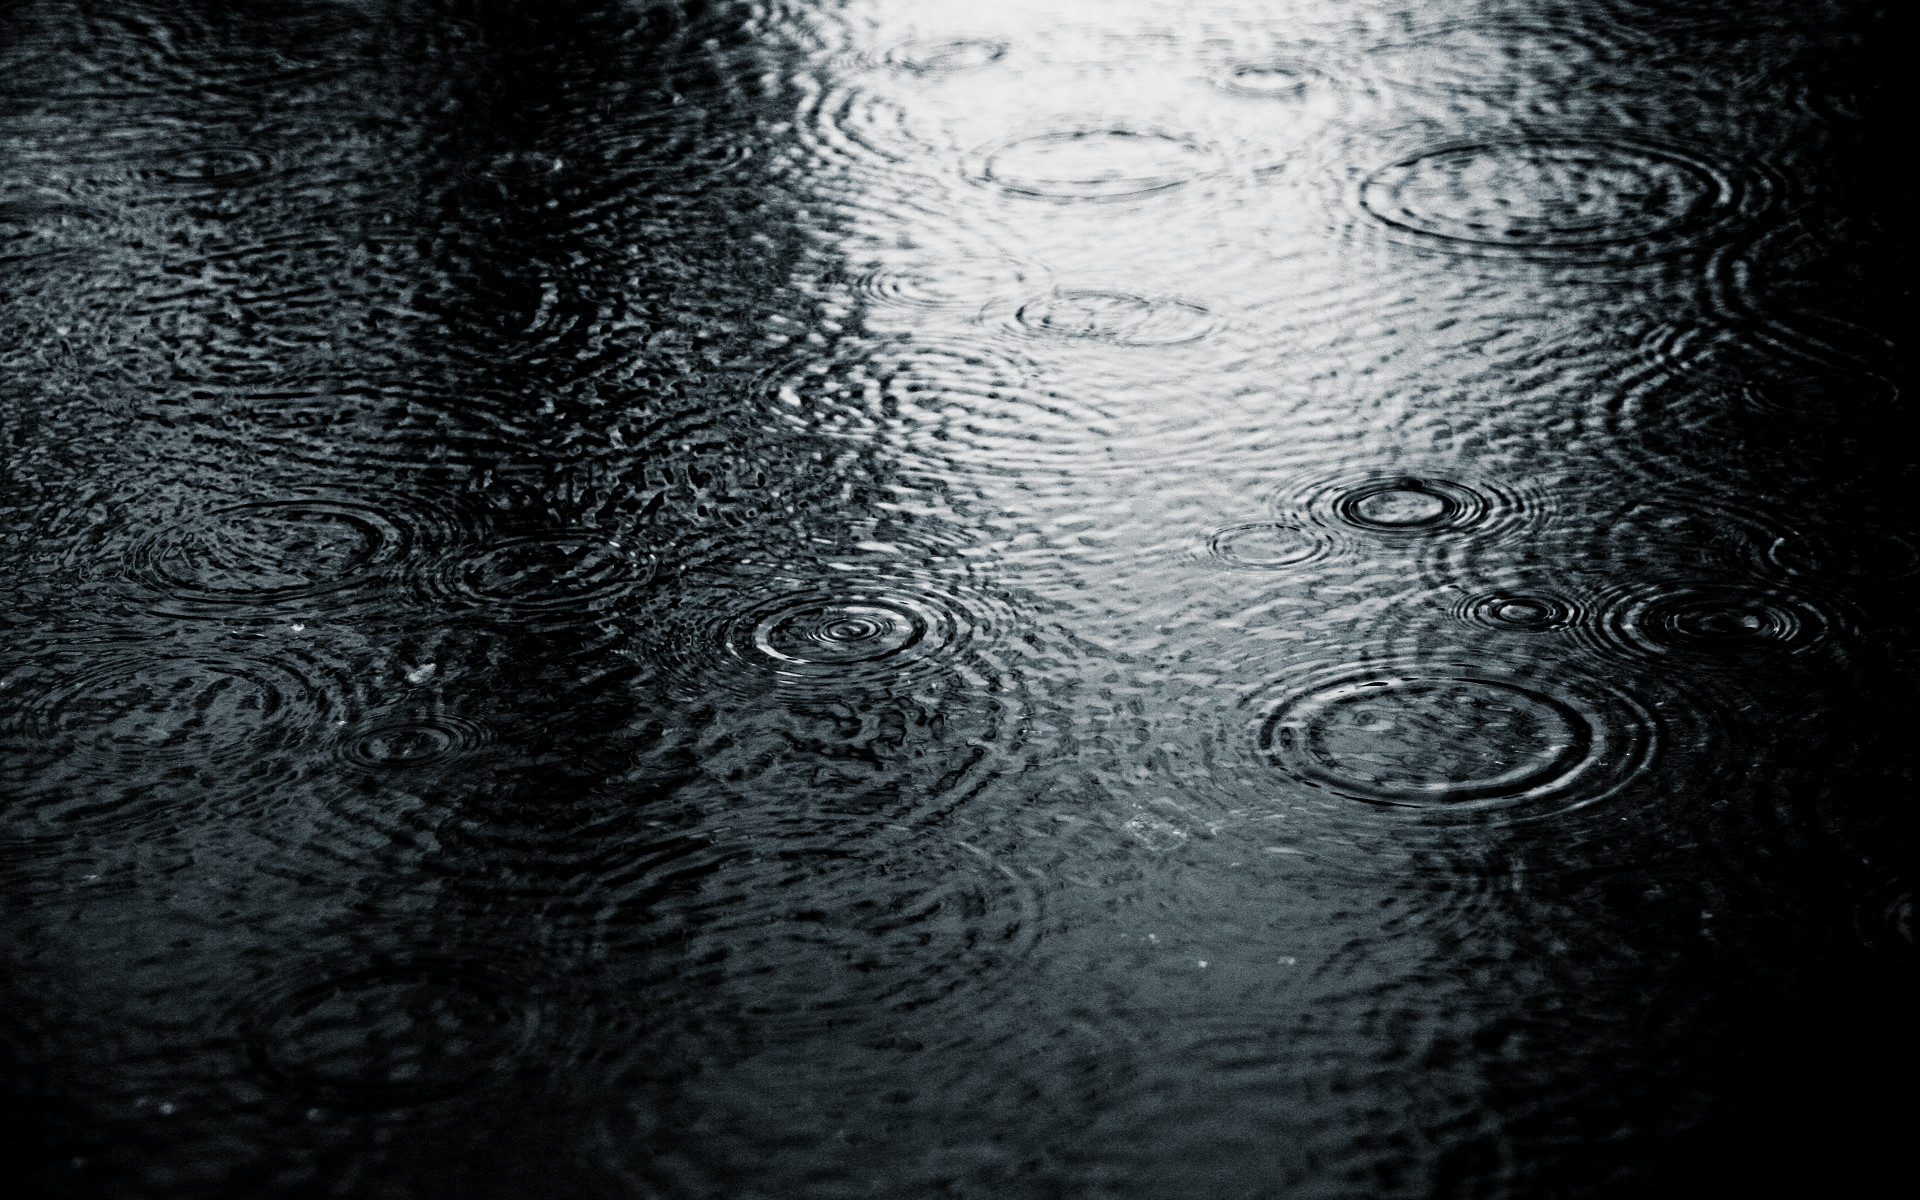 ripples, monochrome, water drops - desktop wallpaper